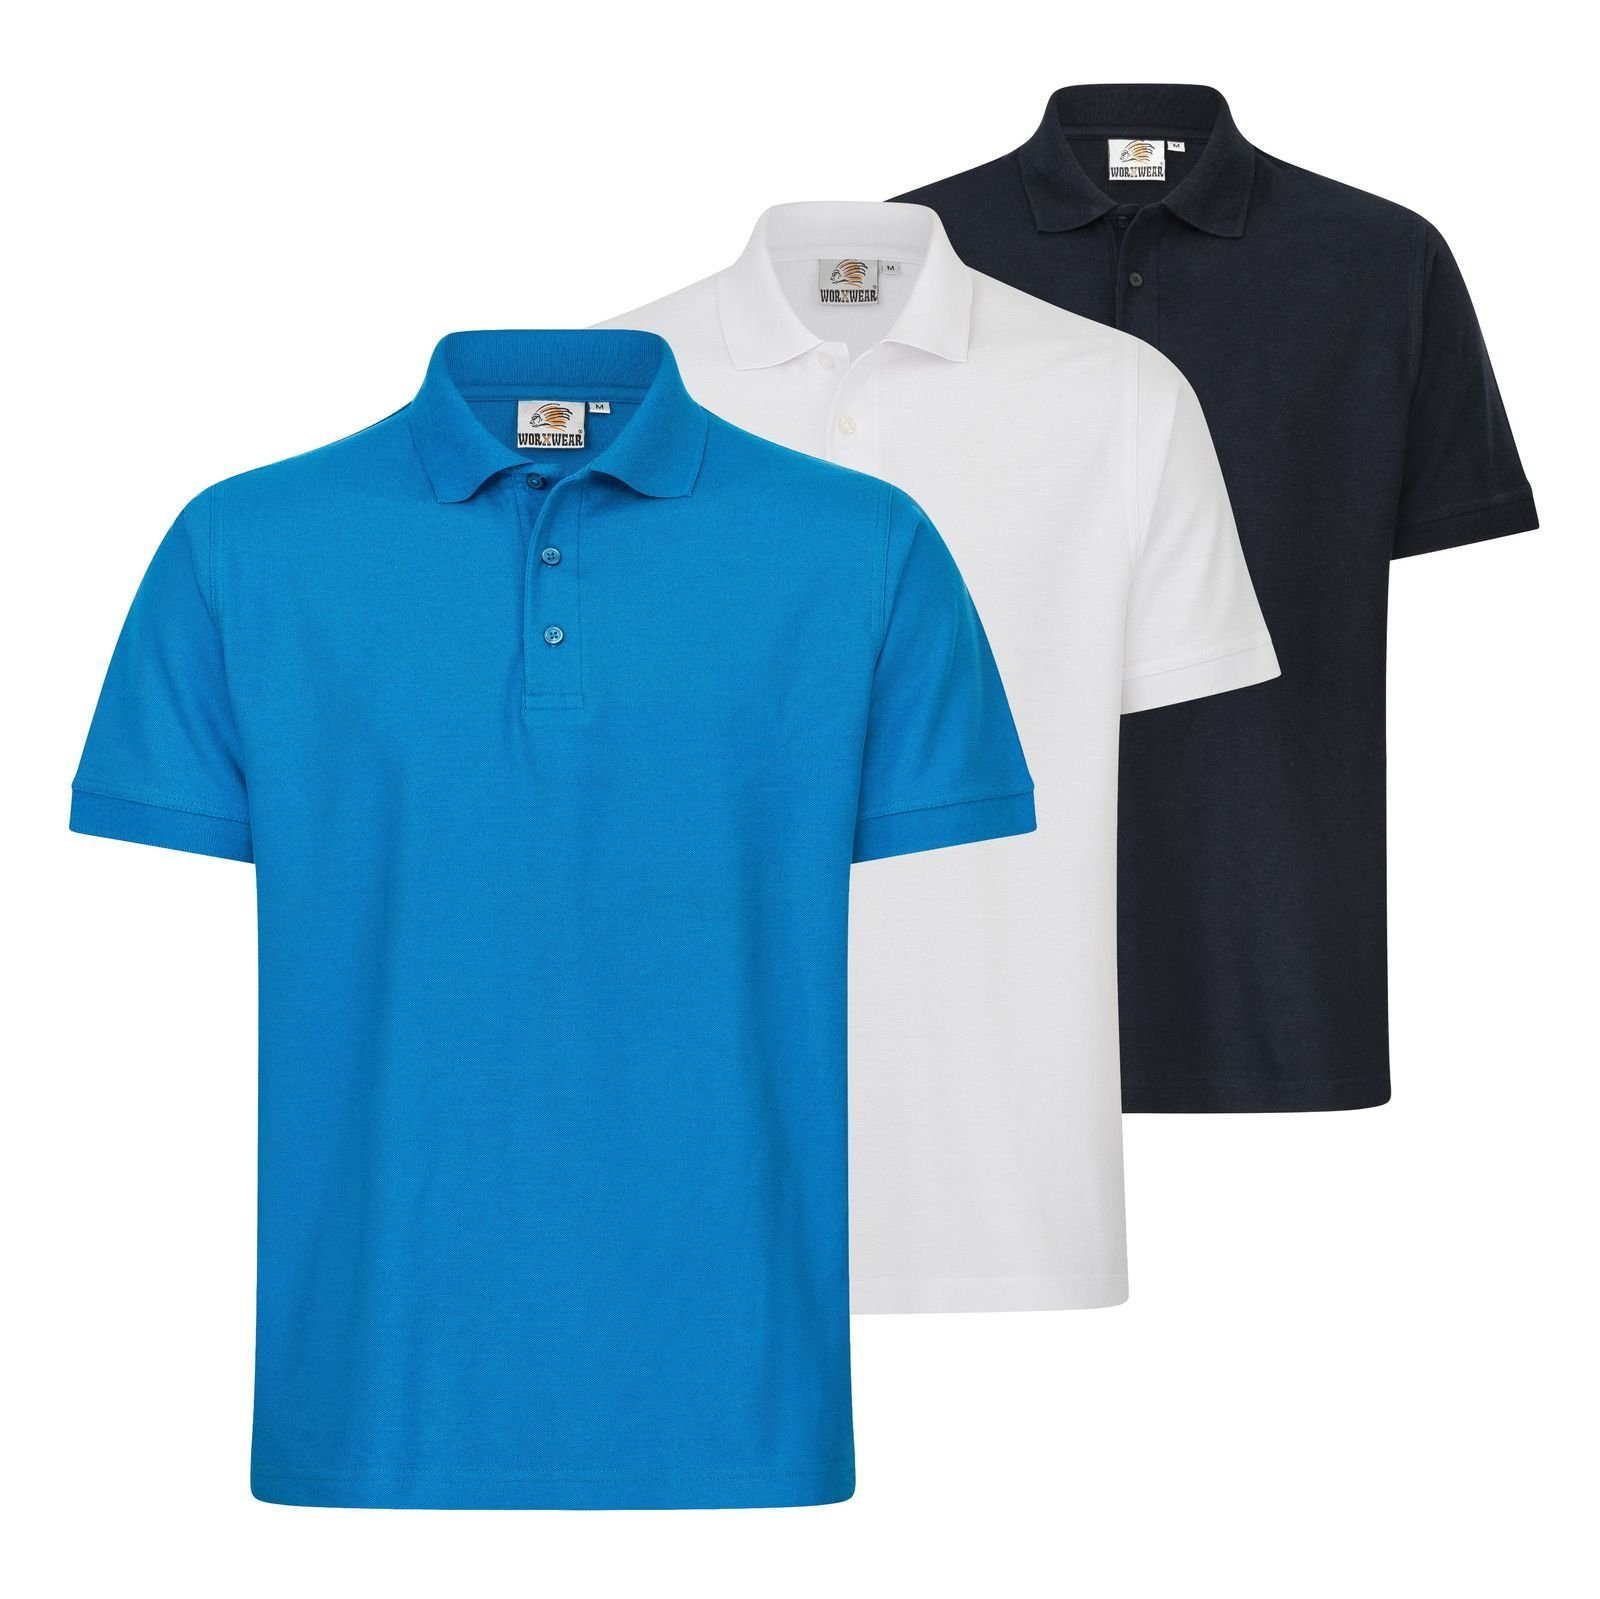 WORXWEAR Poloshirt Herren (Spar-Set, 3er-Pack) strapazierfähiges Poloshirt mit Einlaufwert < 5% dunkelblau, blau, weiß